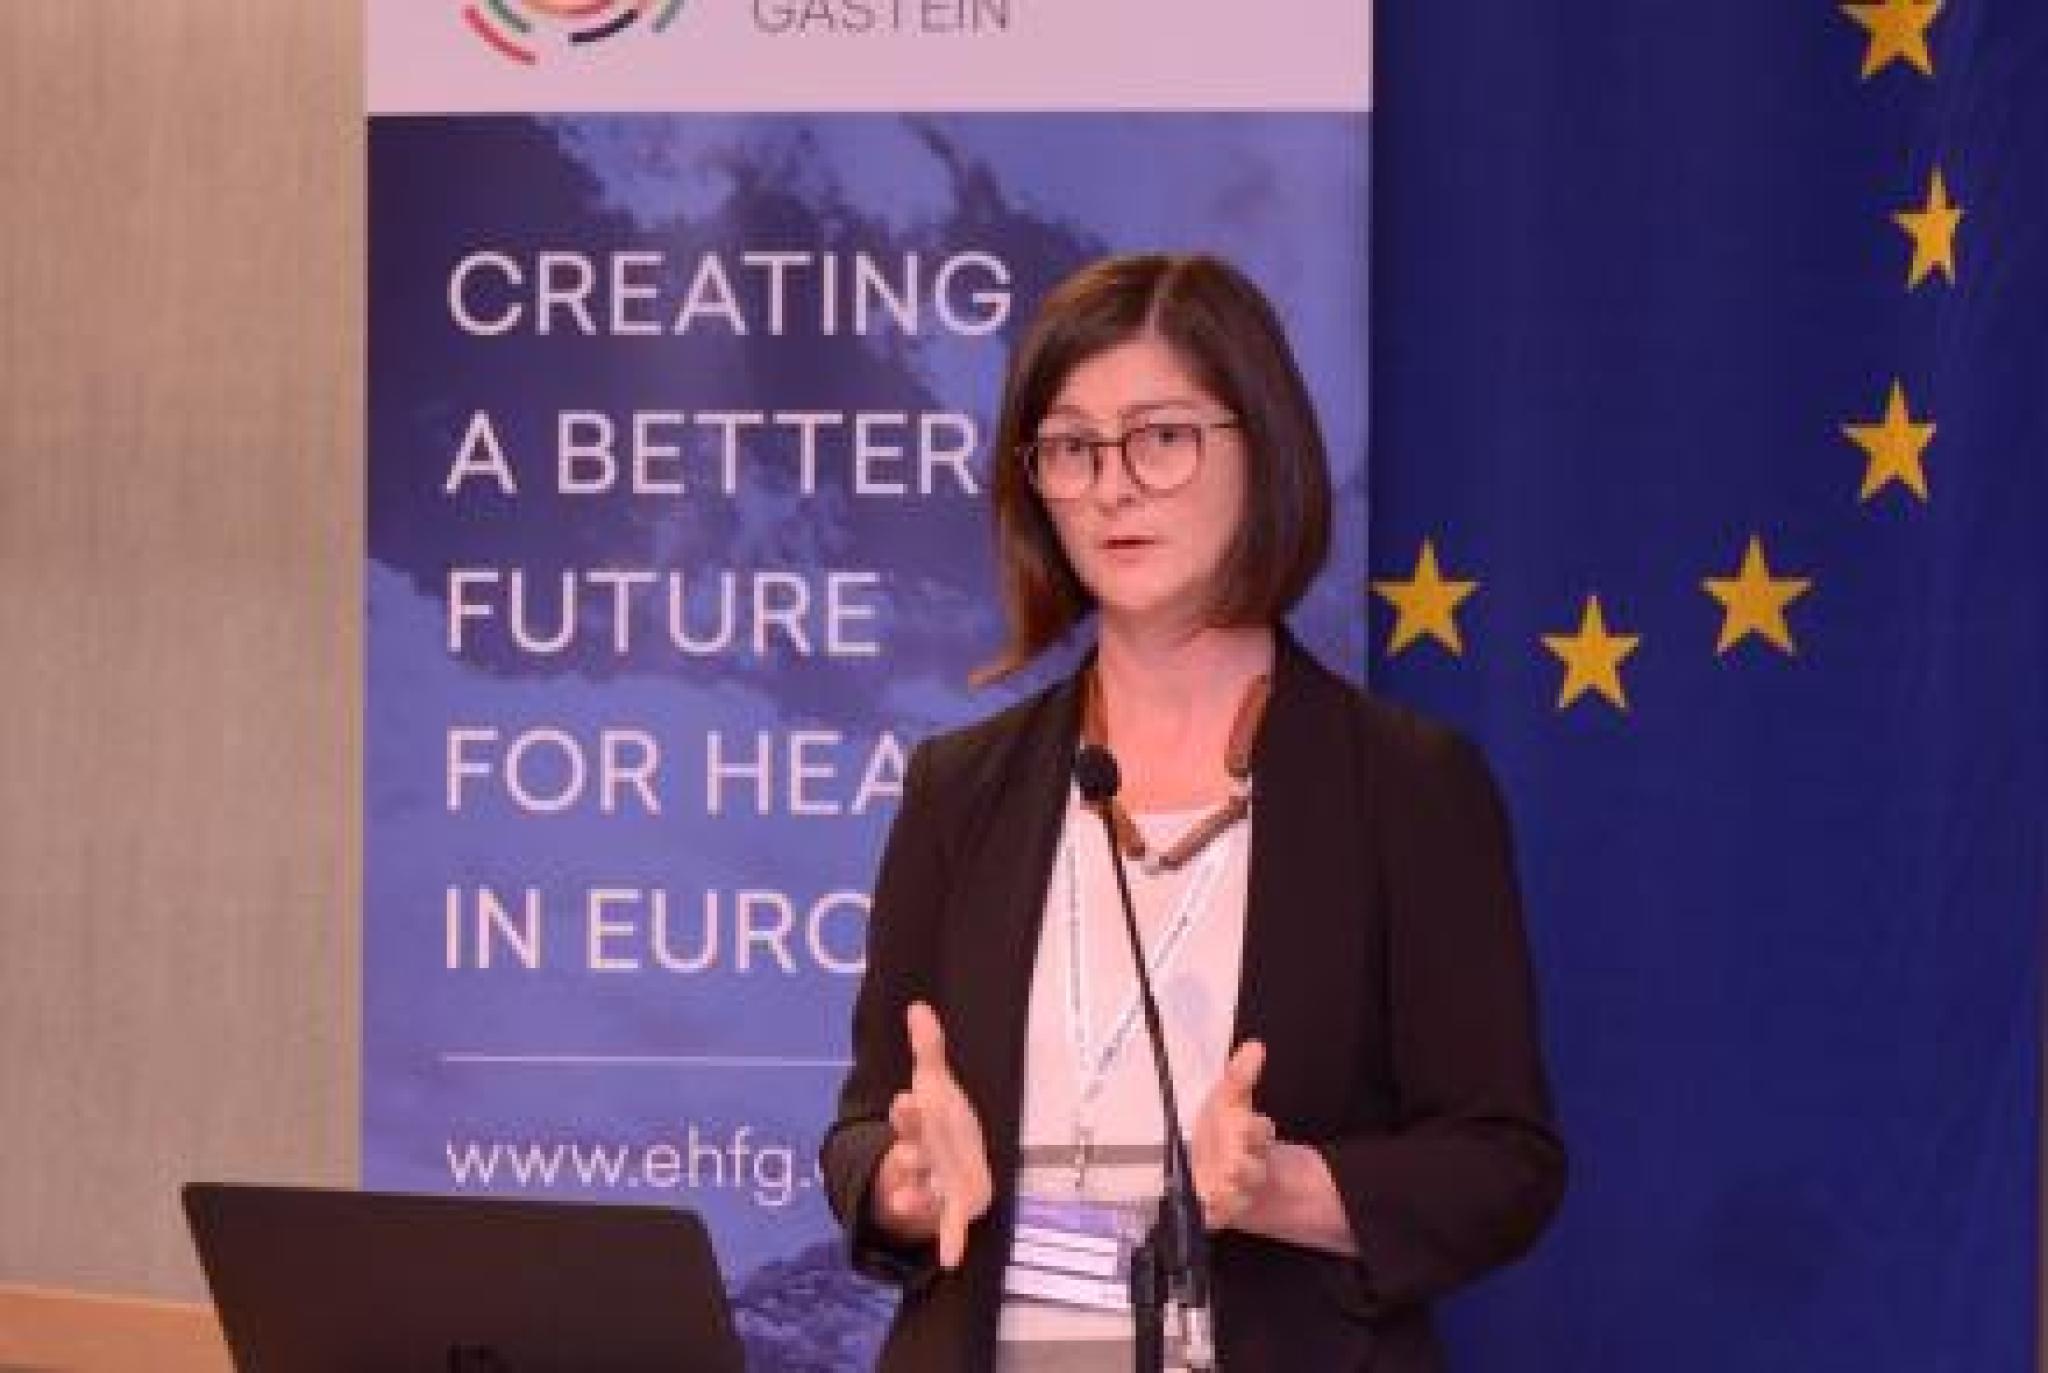 Image: Sharon Friel presenting - European Health Forum Gastein (Flickr)